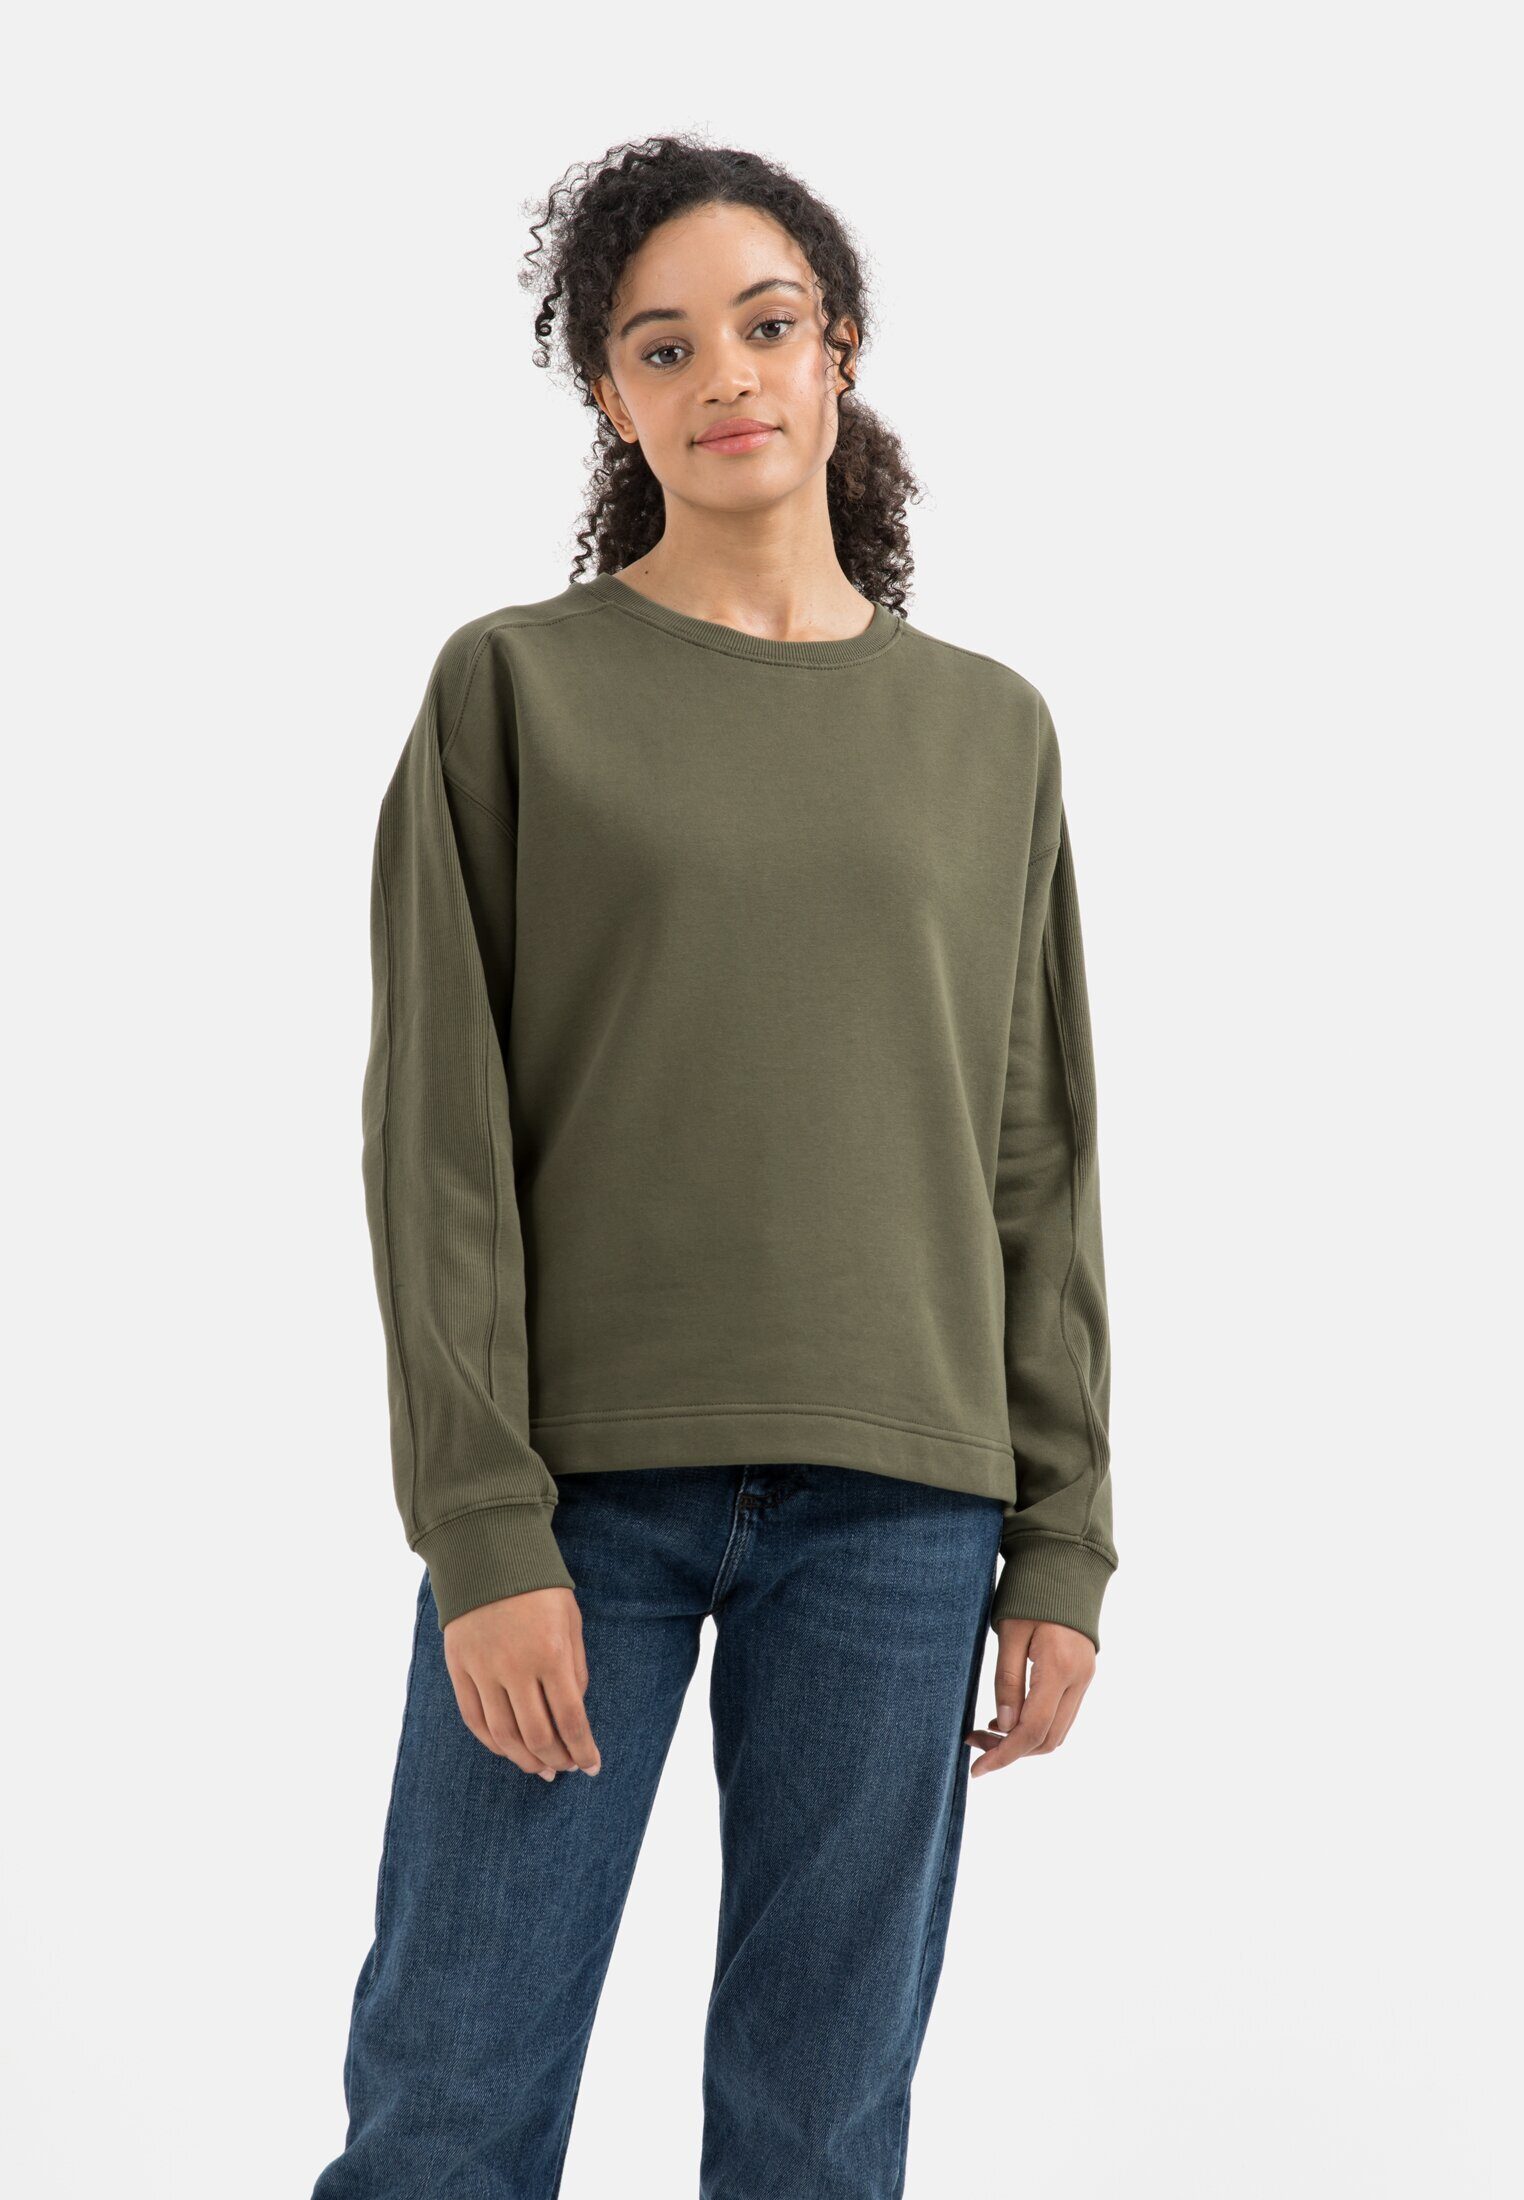 reiner aus camel active Oliv-Grau Baumwolle Sweatshirt